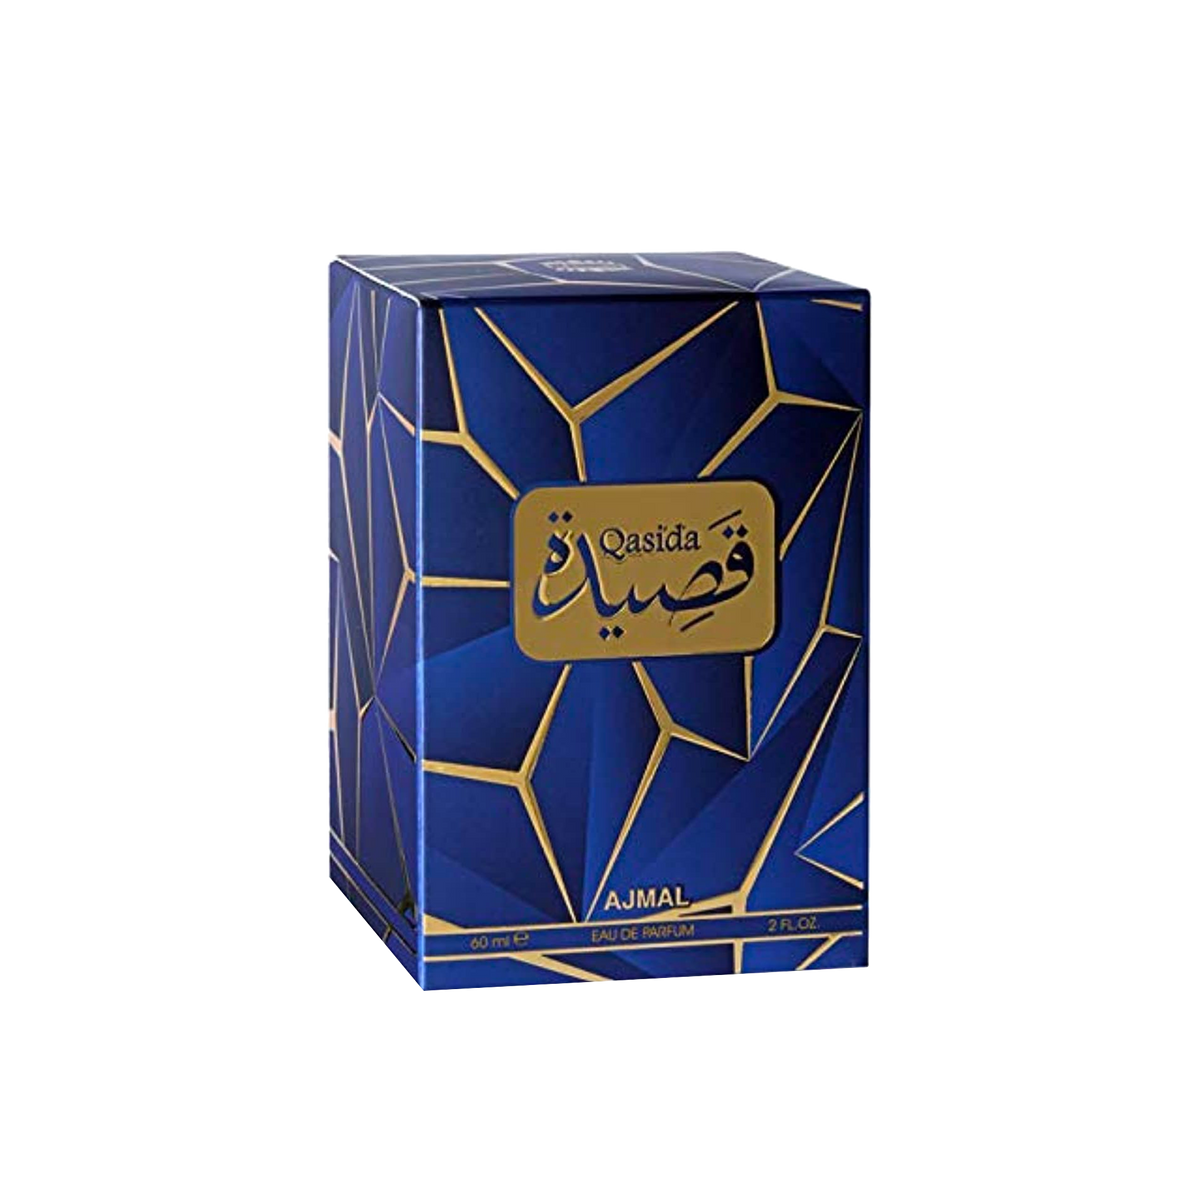 Ajmal Qisada Perfume 60ml